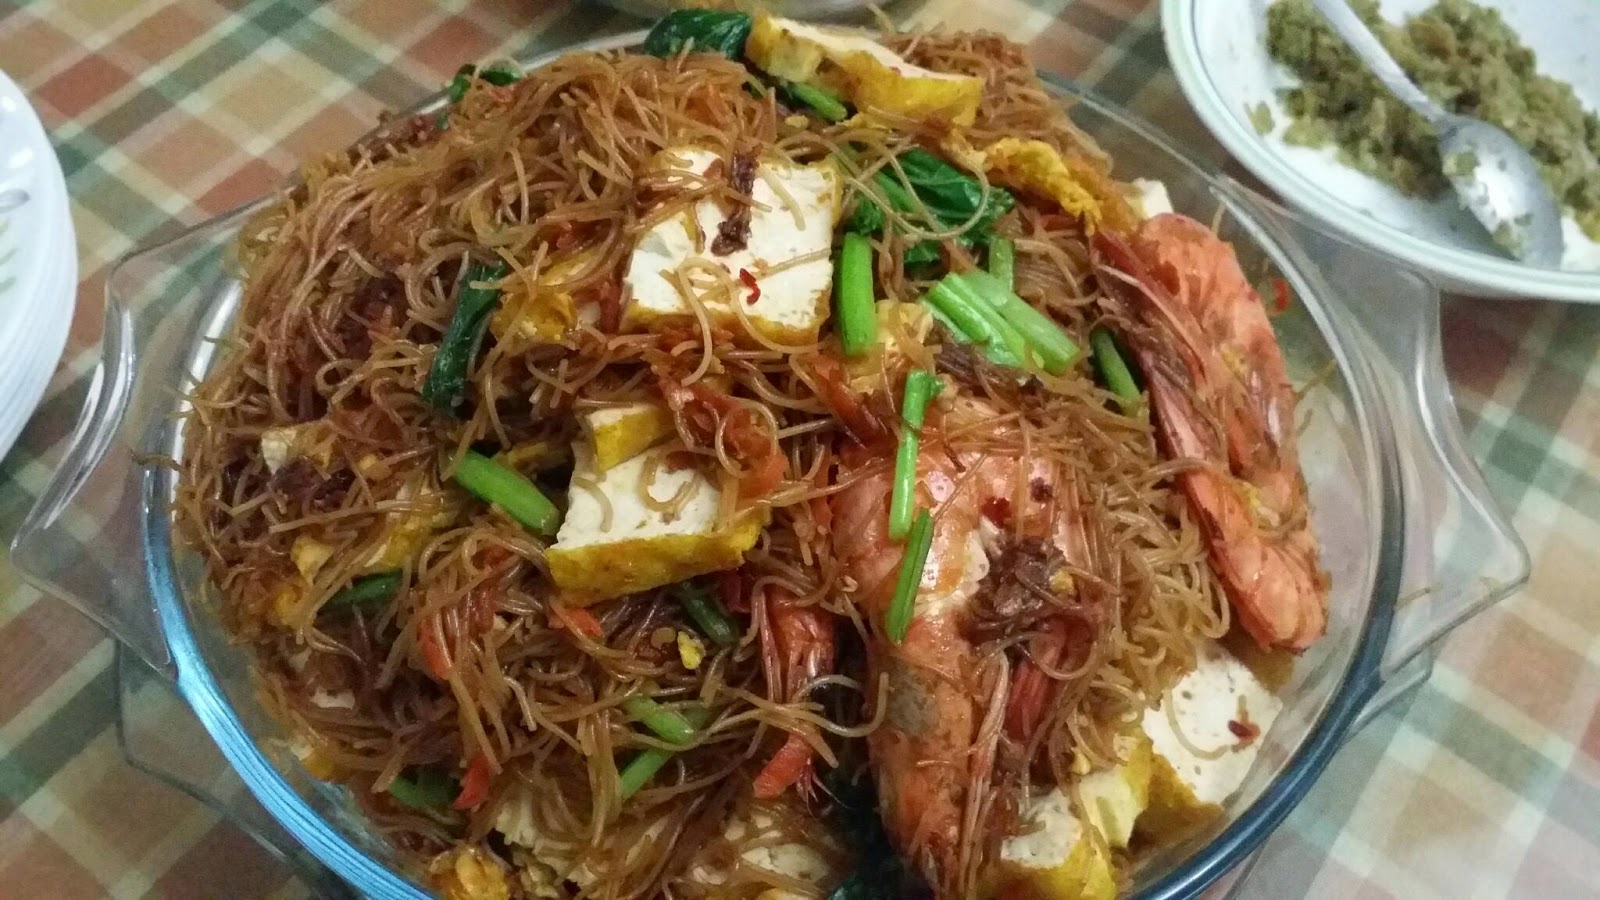 ZULFAZA LOVES COOKING: Fried glass noodles/suun goreng